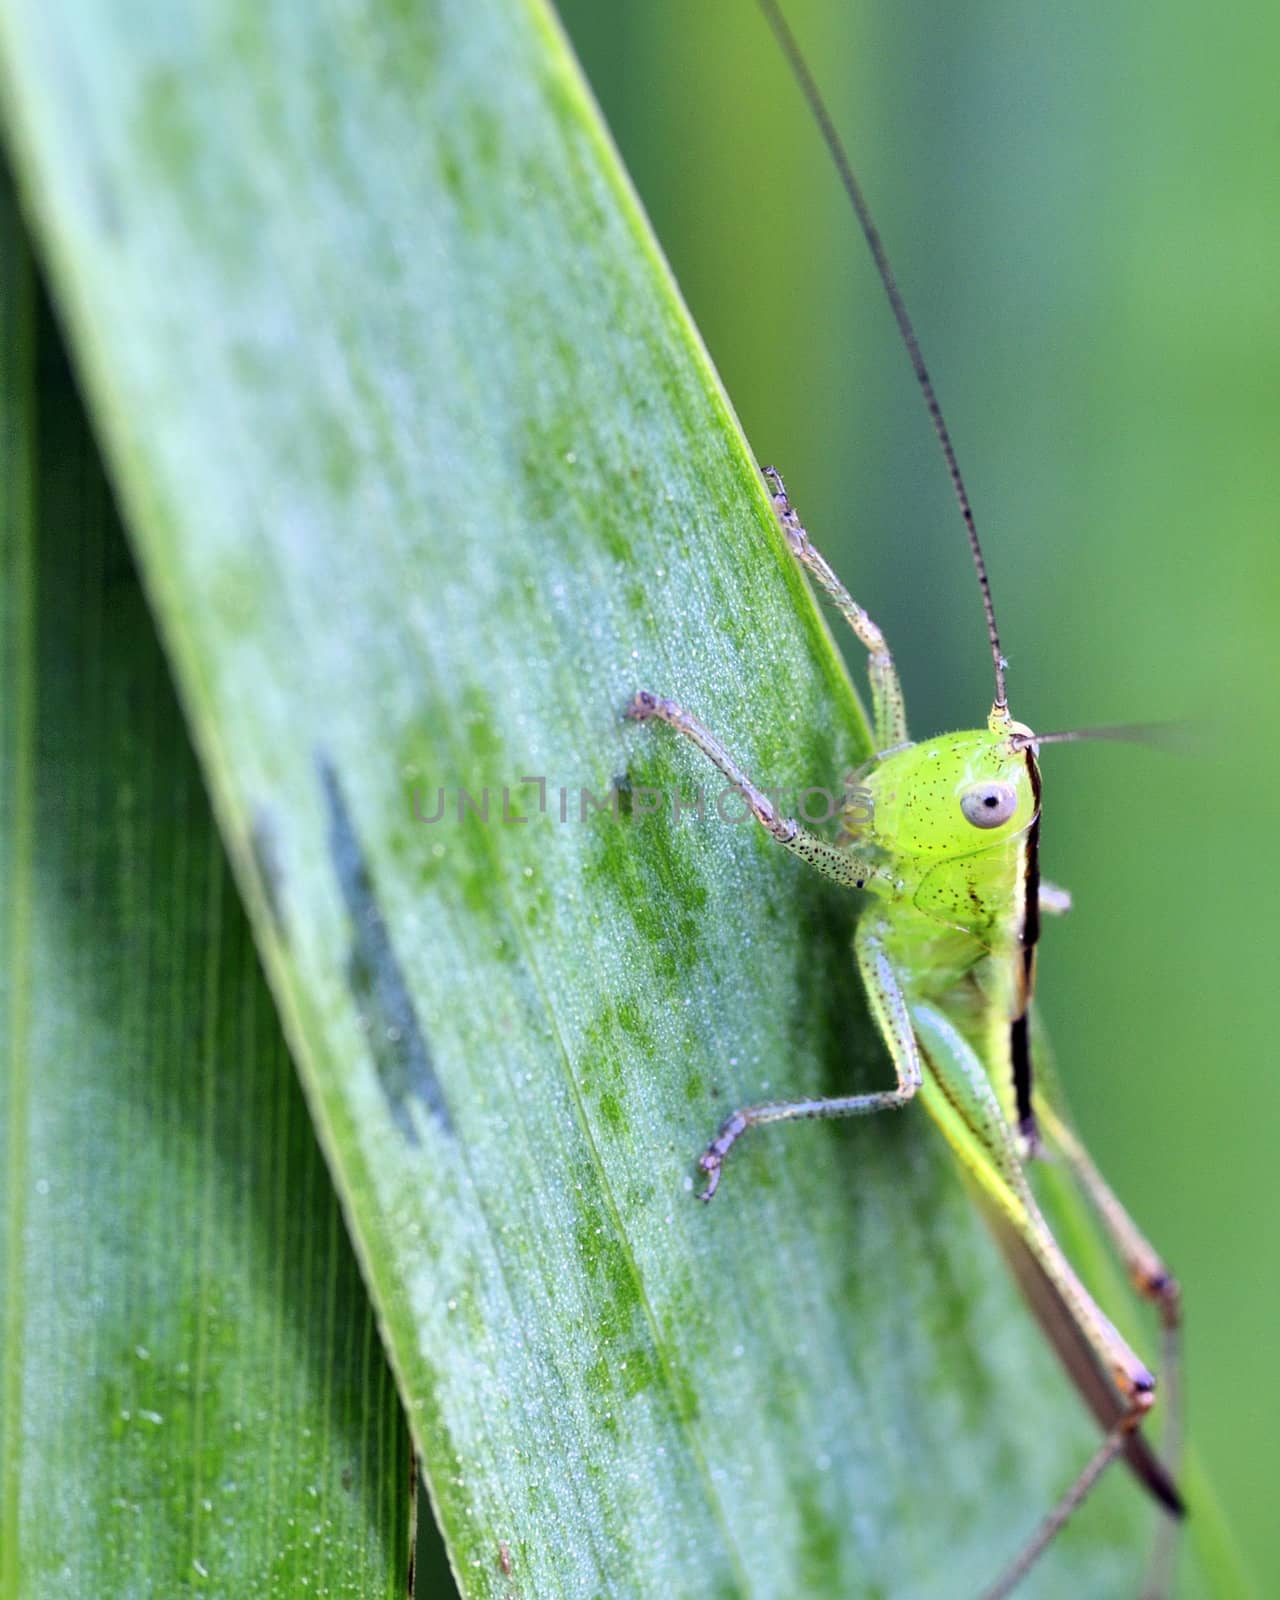 A katydid nymph perched on a green leaf.